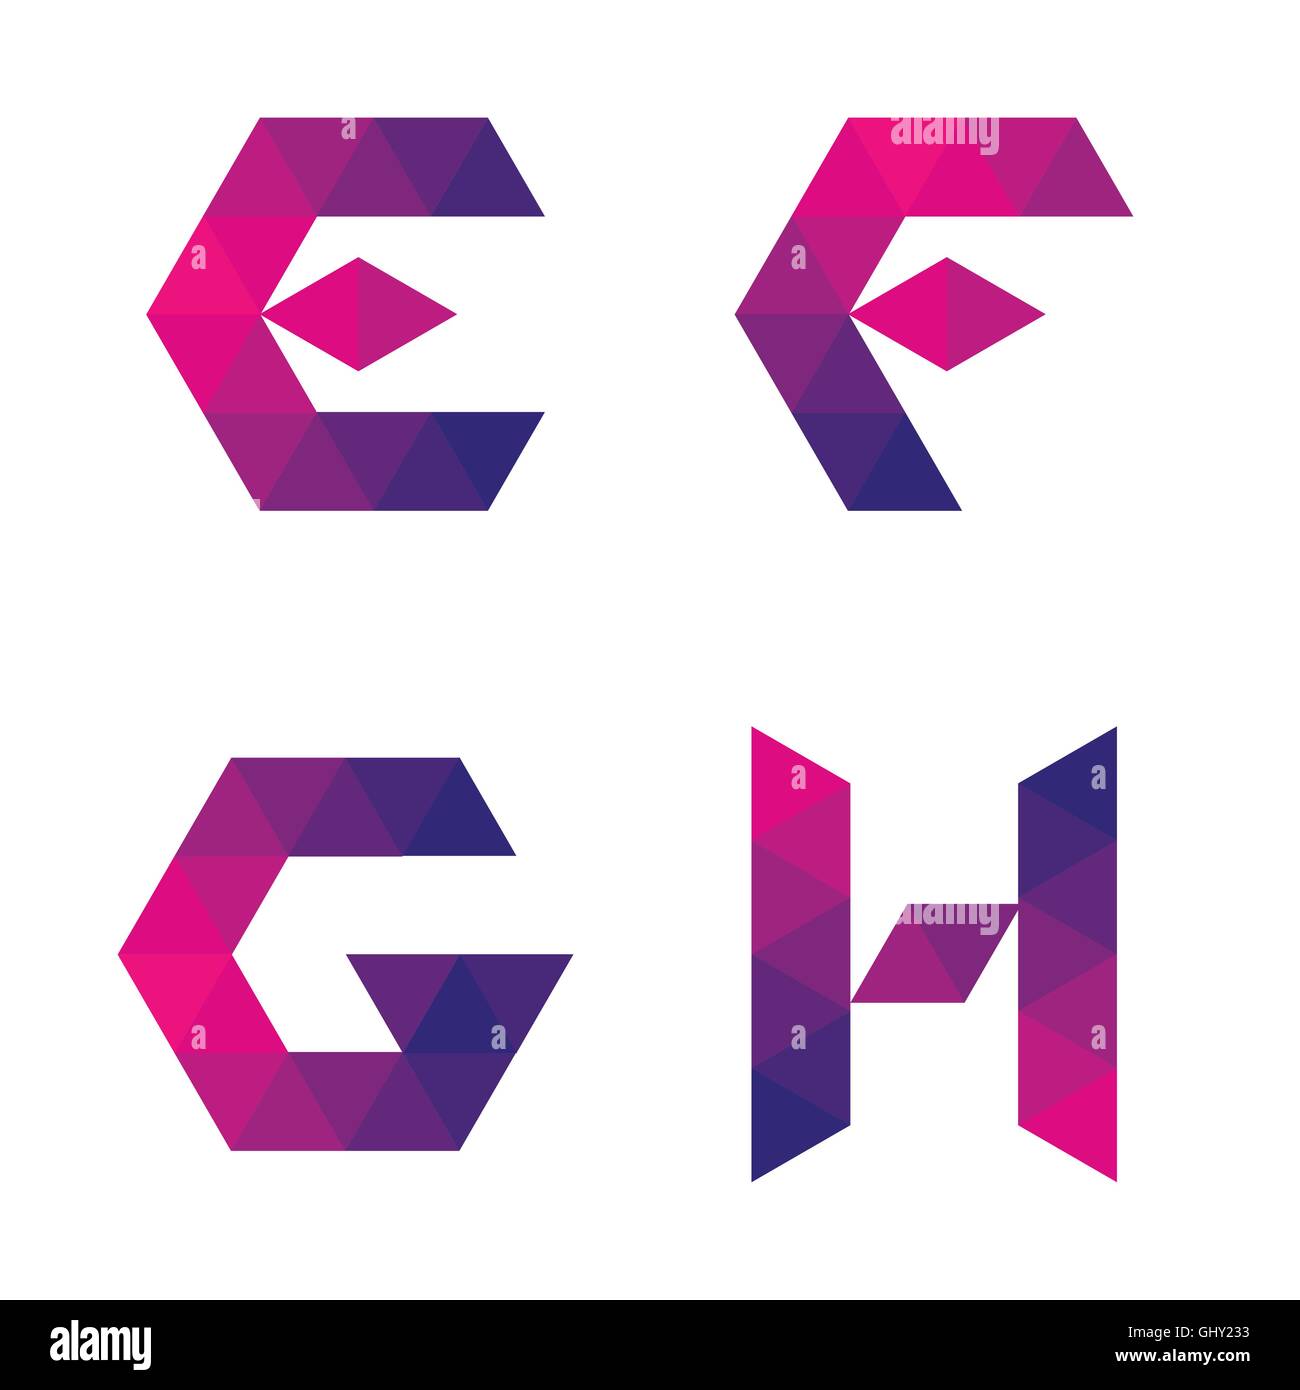 Serie De Letras E F G H Formado Por Triángulos De